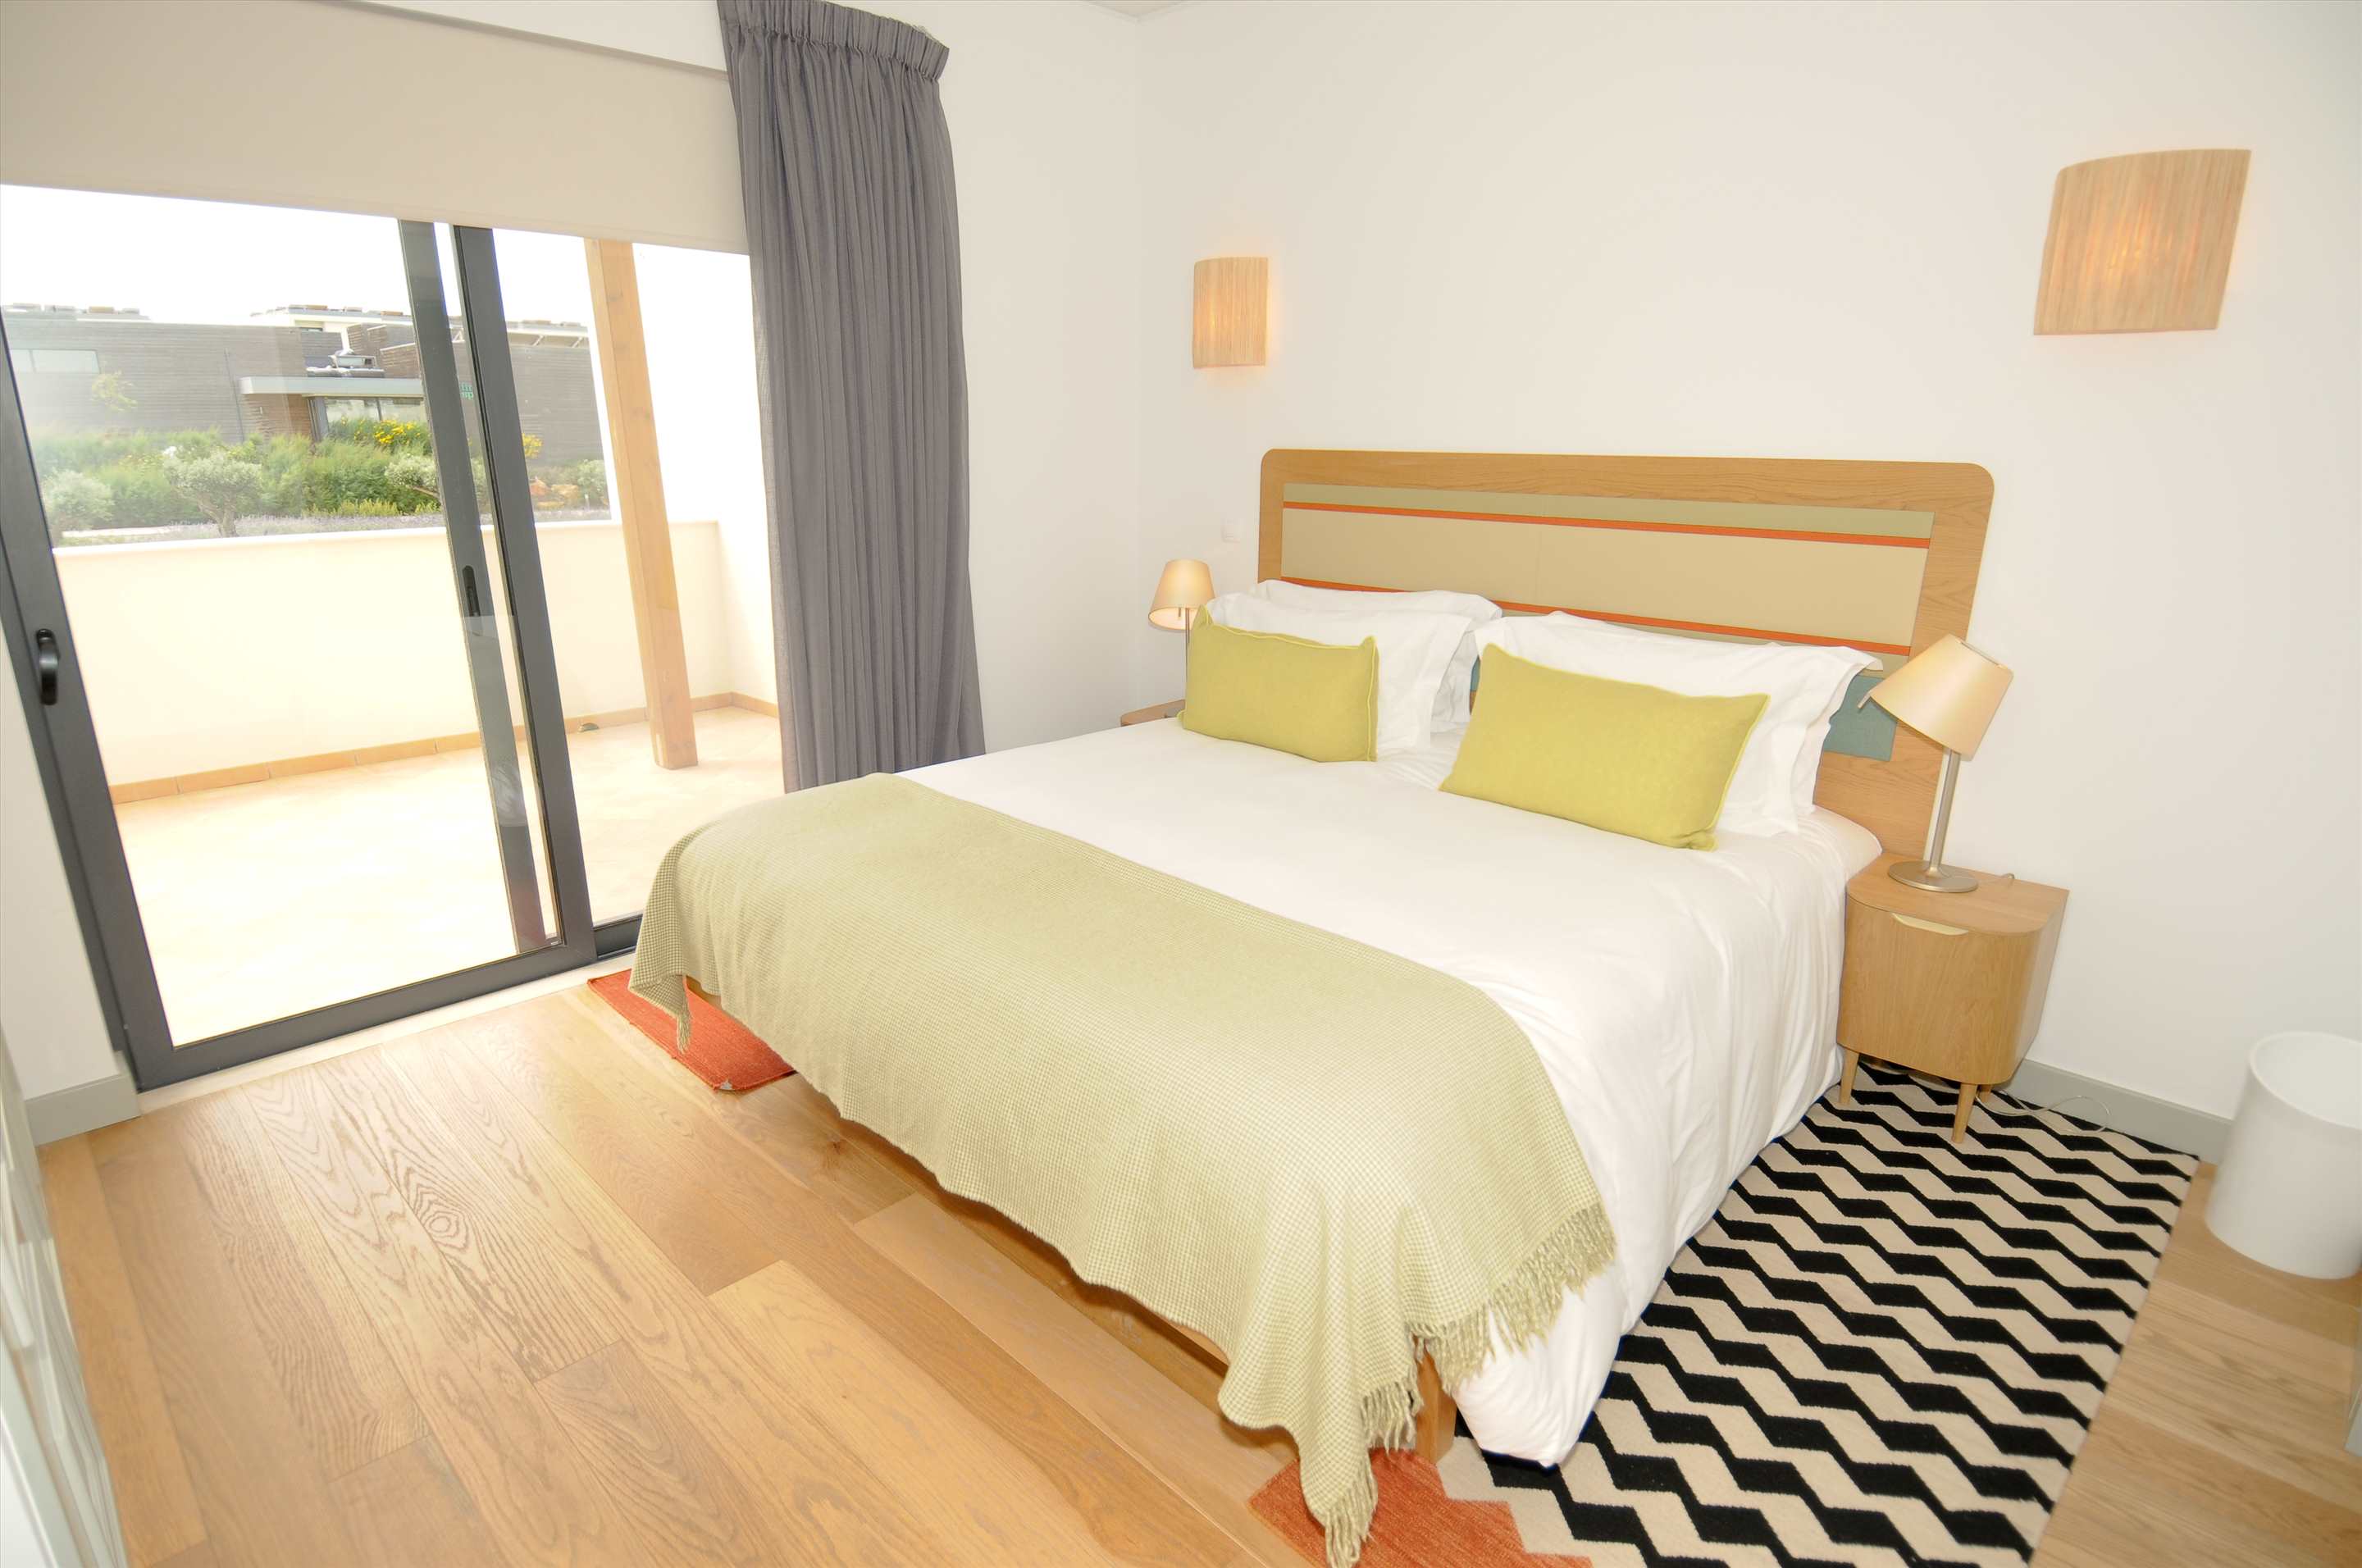 Martinhal Village Garden House, Deluxe One Bedroom Apartment, 1 bedroom villa in Martinhal Sagres, Algarve Photo #6